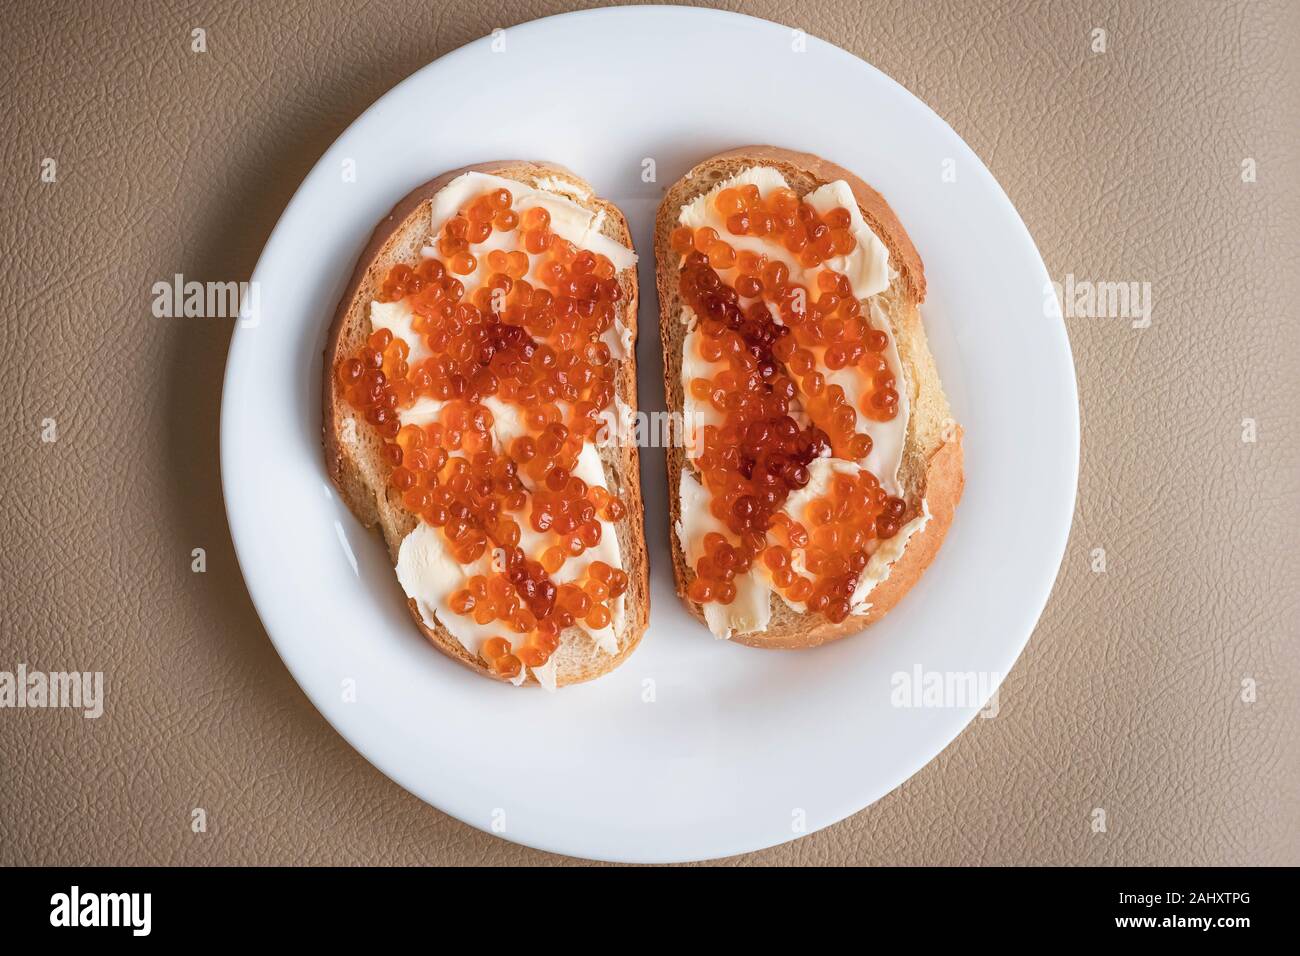 Due panini con burro e caviale rosso su una piastra bianca, vista dall'alto Foto Stock